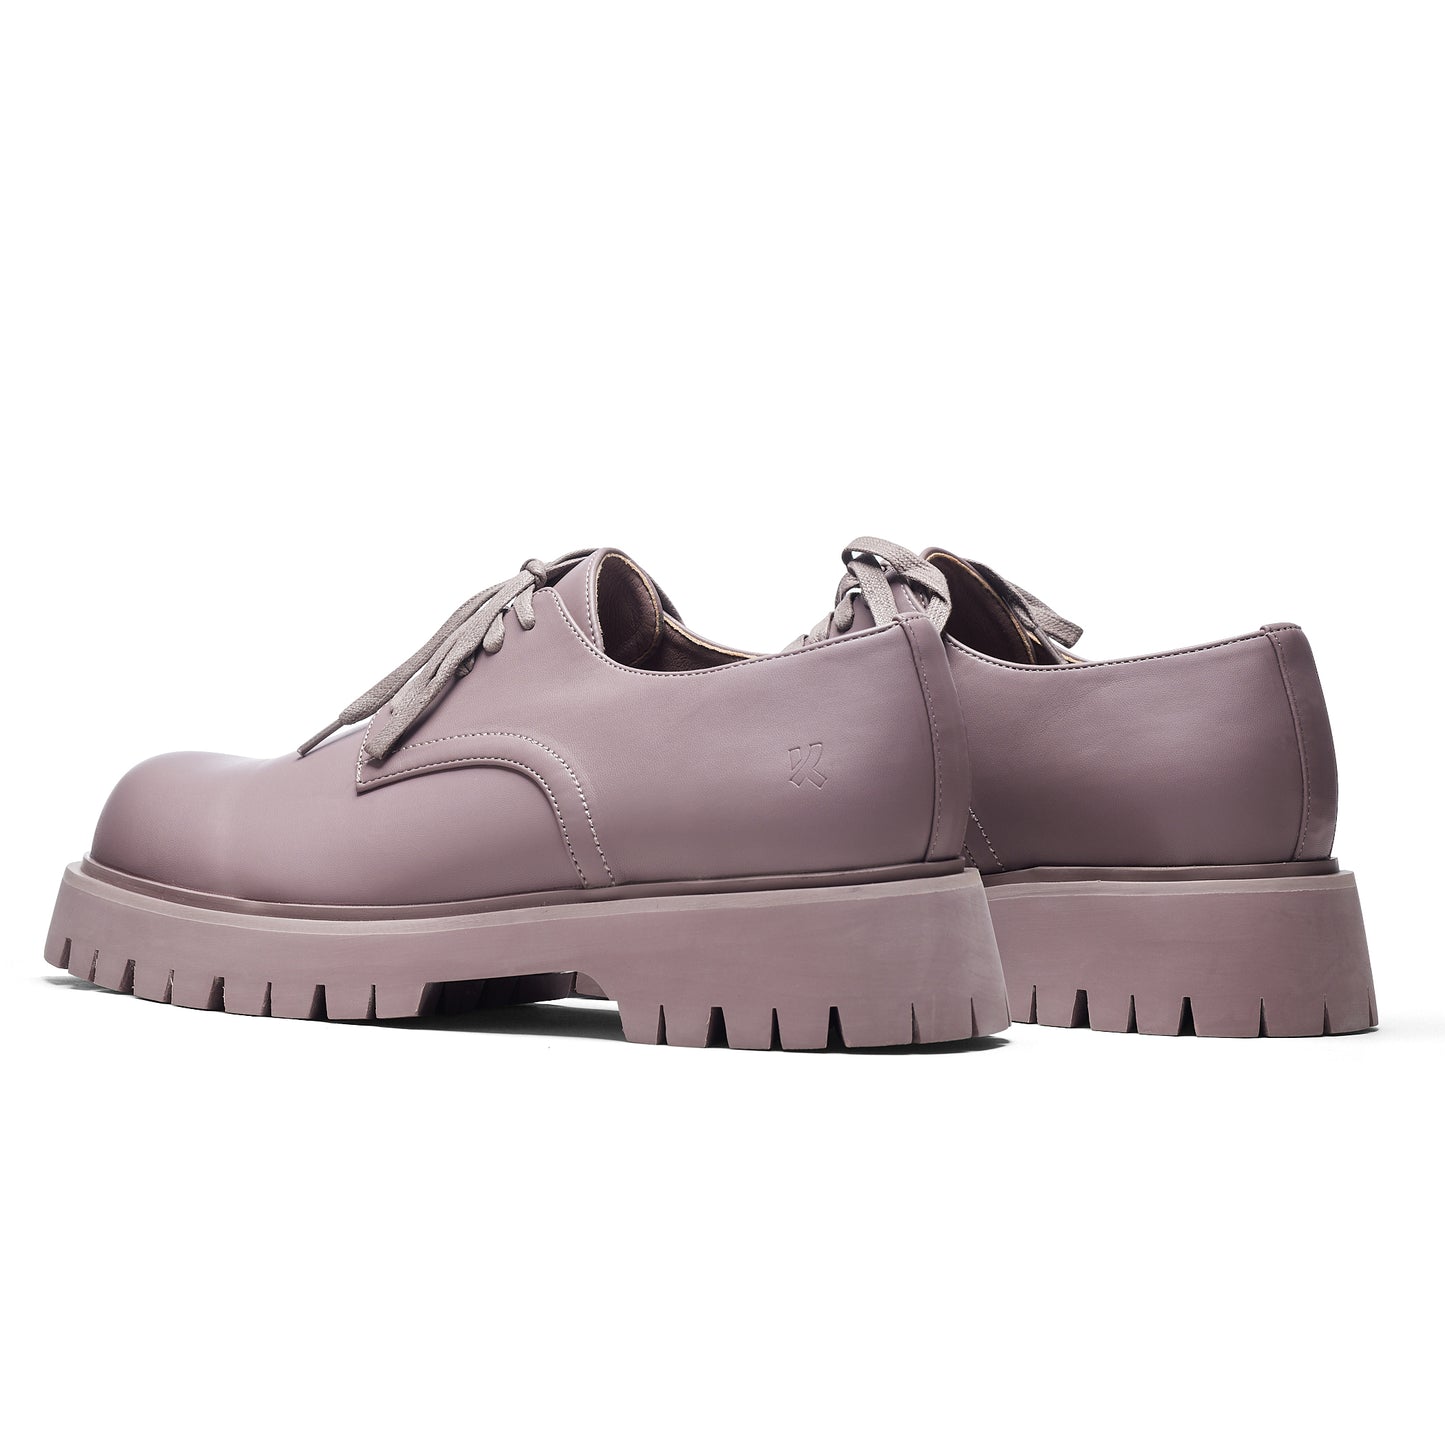 Avian Men's Lace Up Shoes-Mauve - Shoes - KOI Footwear - Purple - Back View